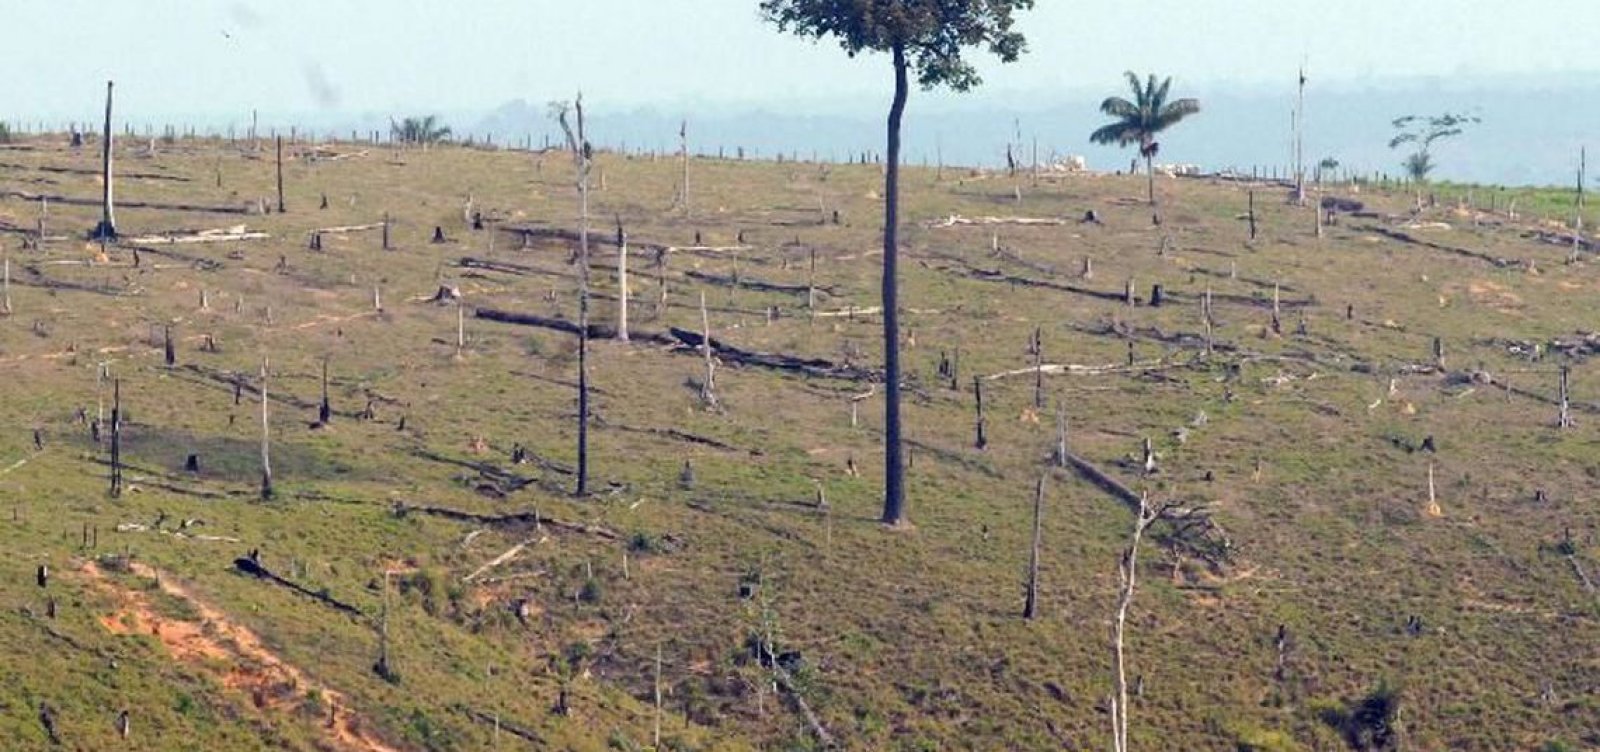 Desmatamento na Amazônia cresce 96% em setembro, indicam alertas do Inpe